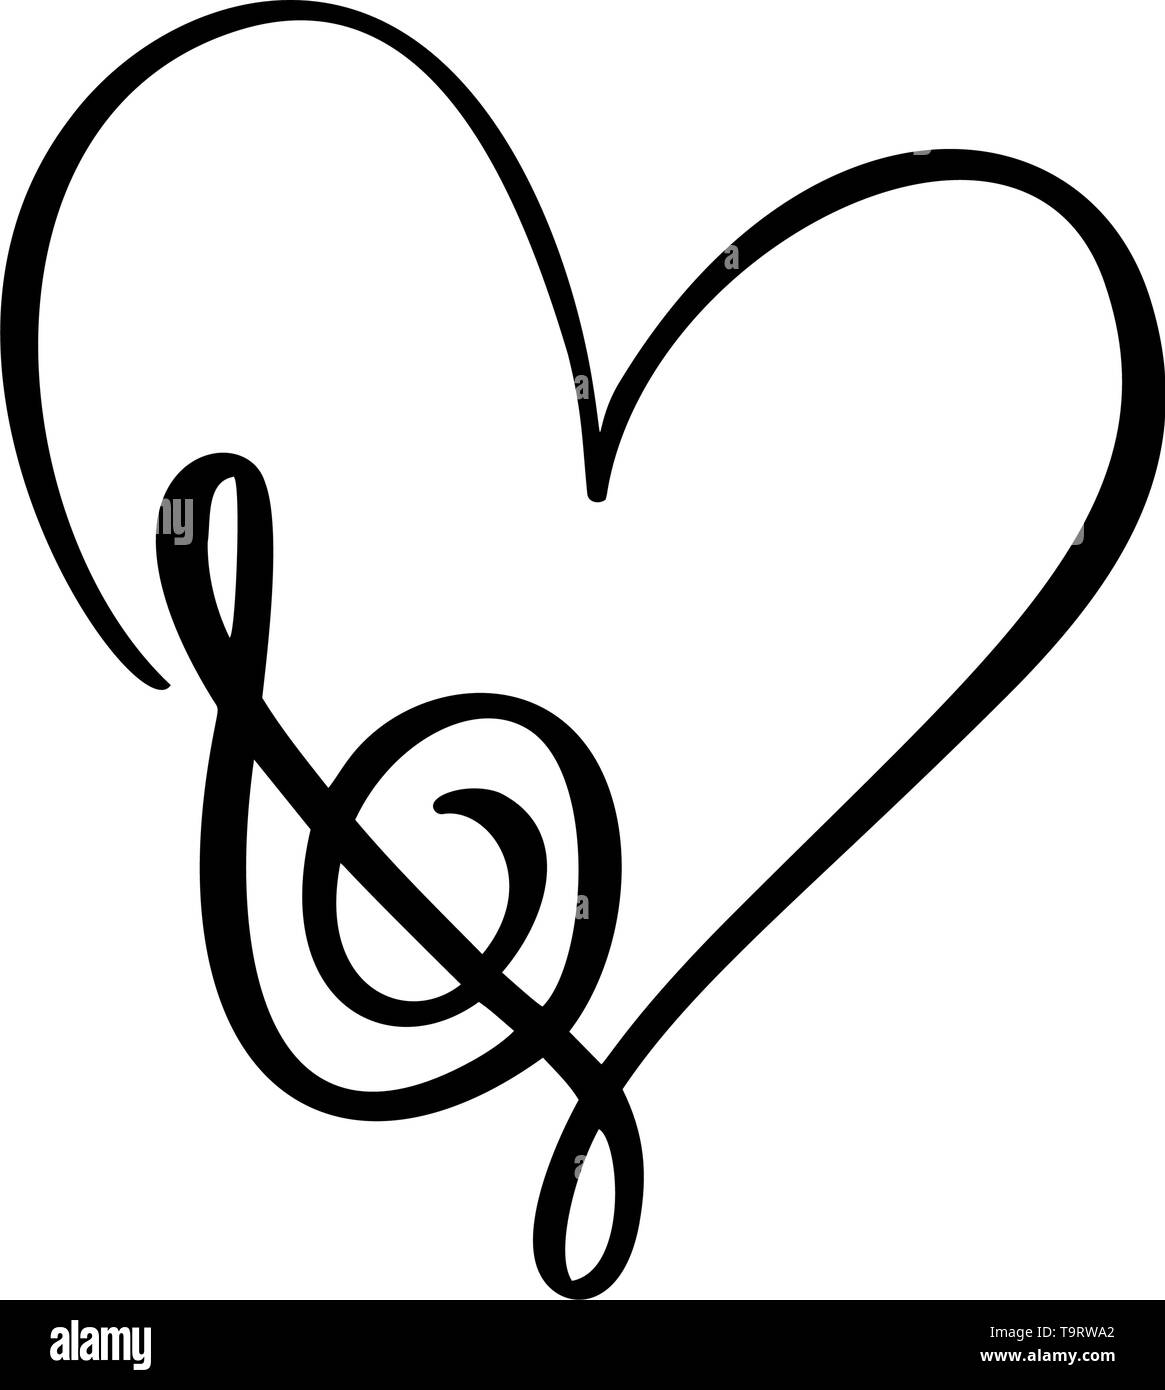 Disegnata a mano amano la musica Logo vettore chiave di violino e di cuore. Isolato su sfondo bianco Illustrazione Vettoriale